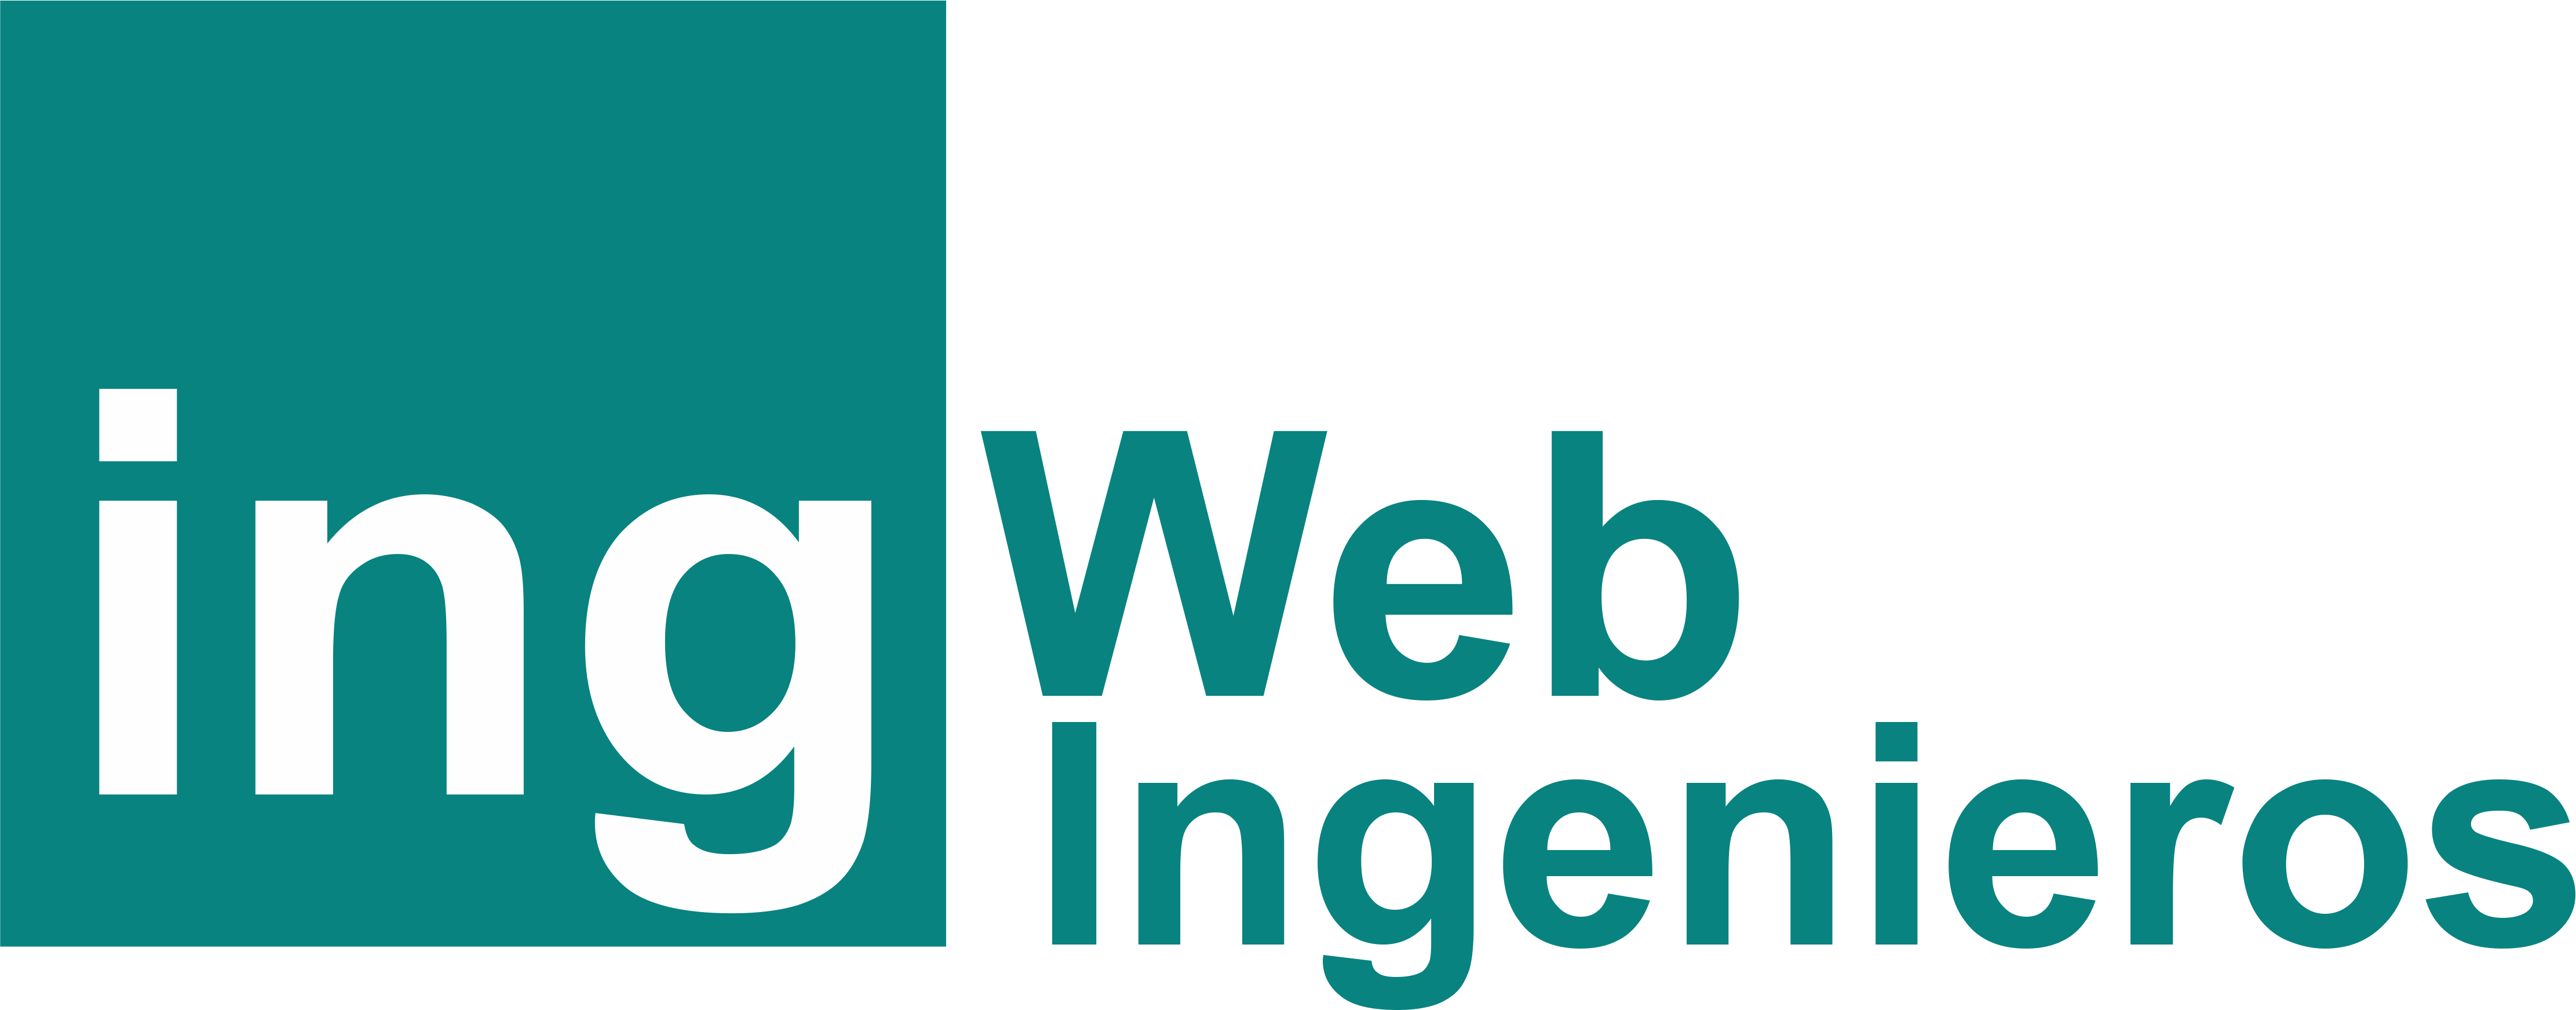 Páginas Web para Ingenieros e Ingenierías